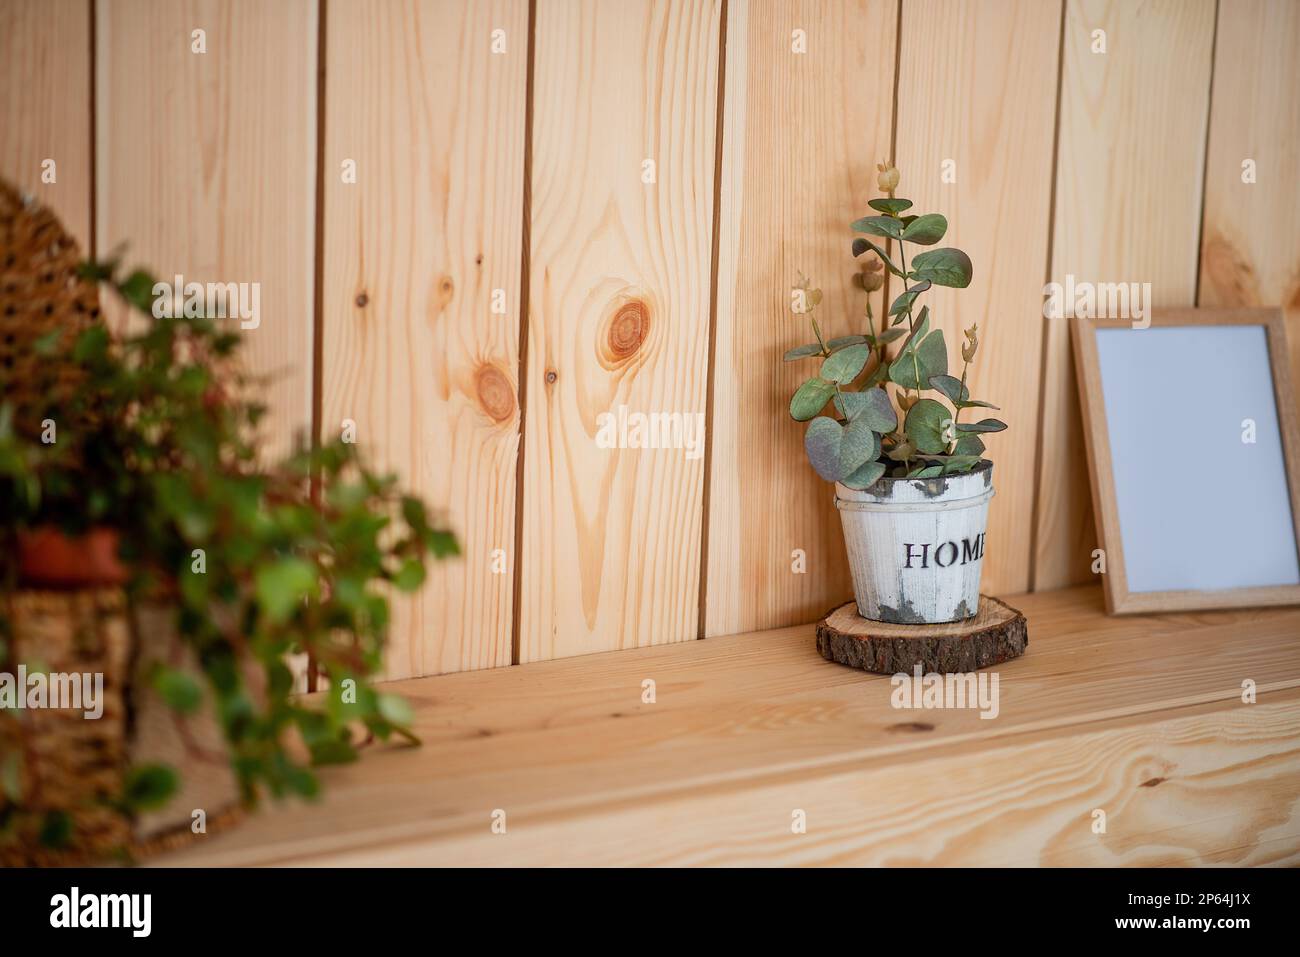 Auf einem Holzregal steht Eukalyptus in einem handgemachten Topf mit weißen Schrammen. Rustikaler, skandinavischer Stil im Inneren des Apartments. Botanisches Design. Stockfoto